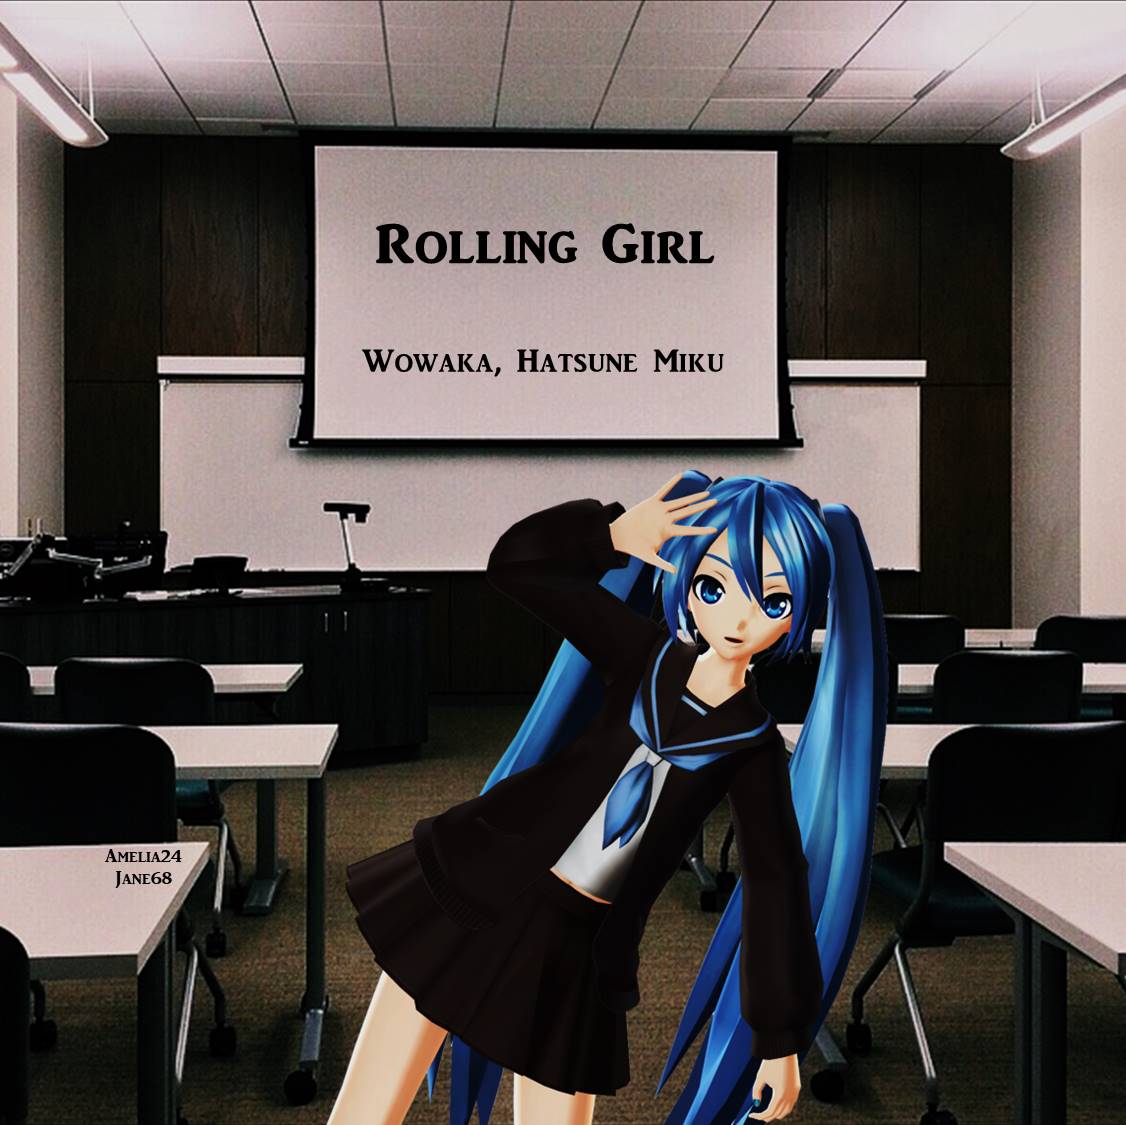  Rolling Girl da Wowaka, Hatsune Miku